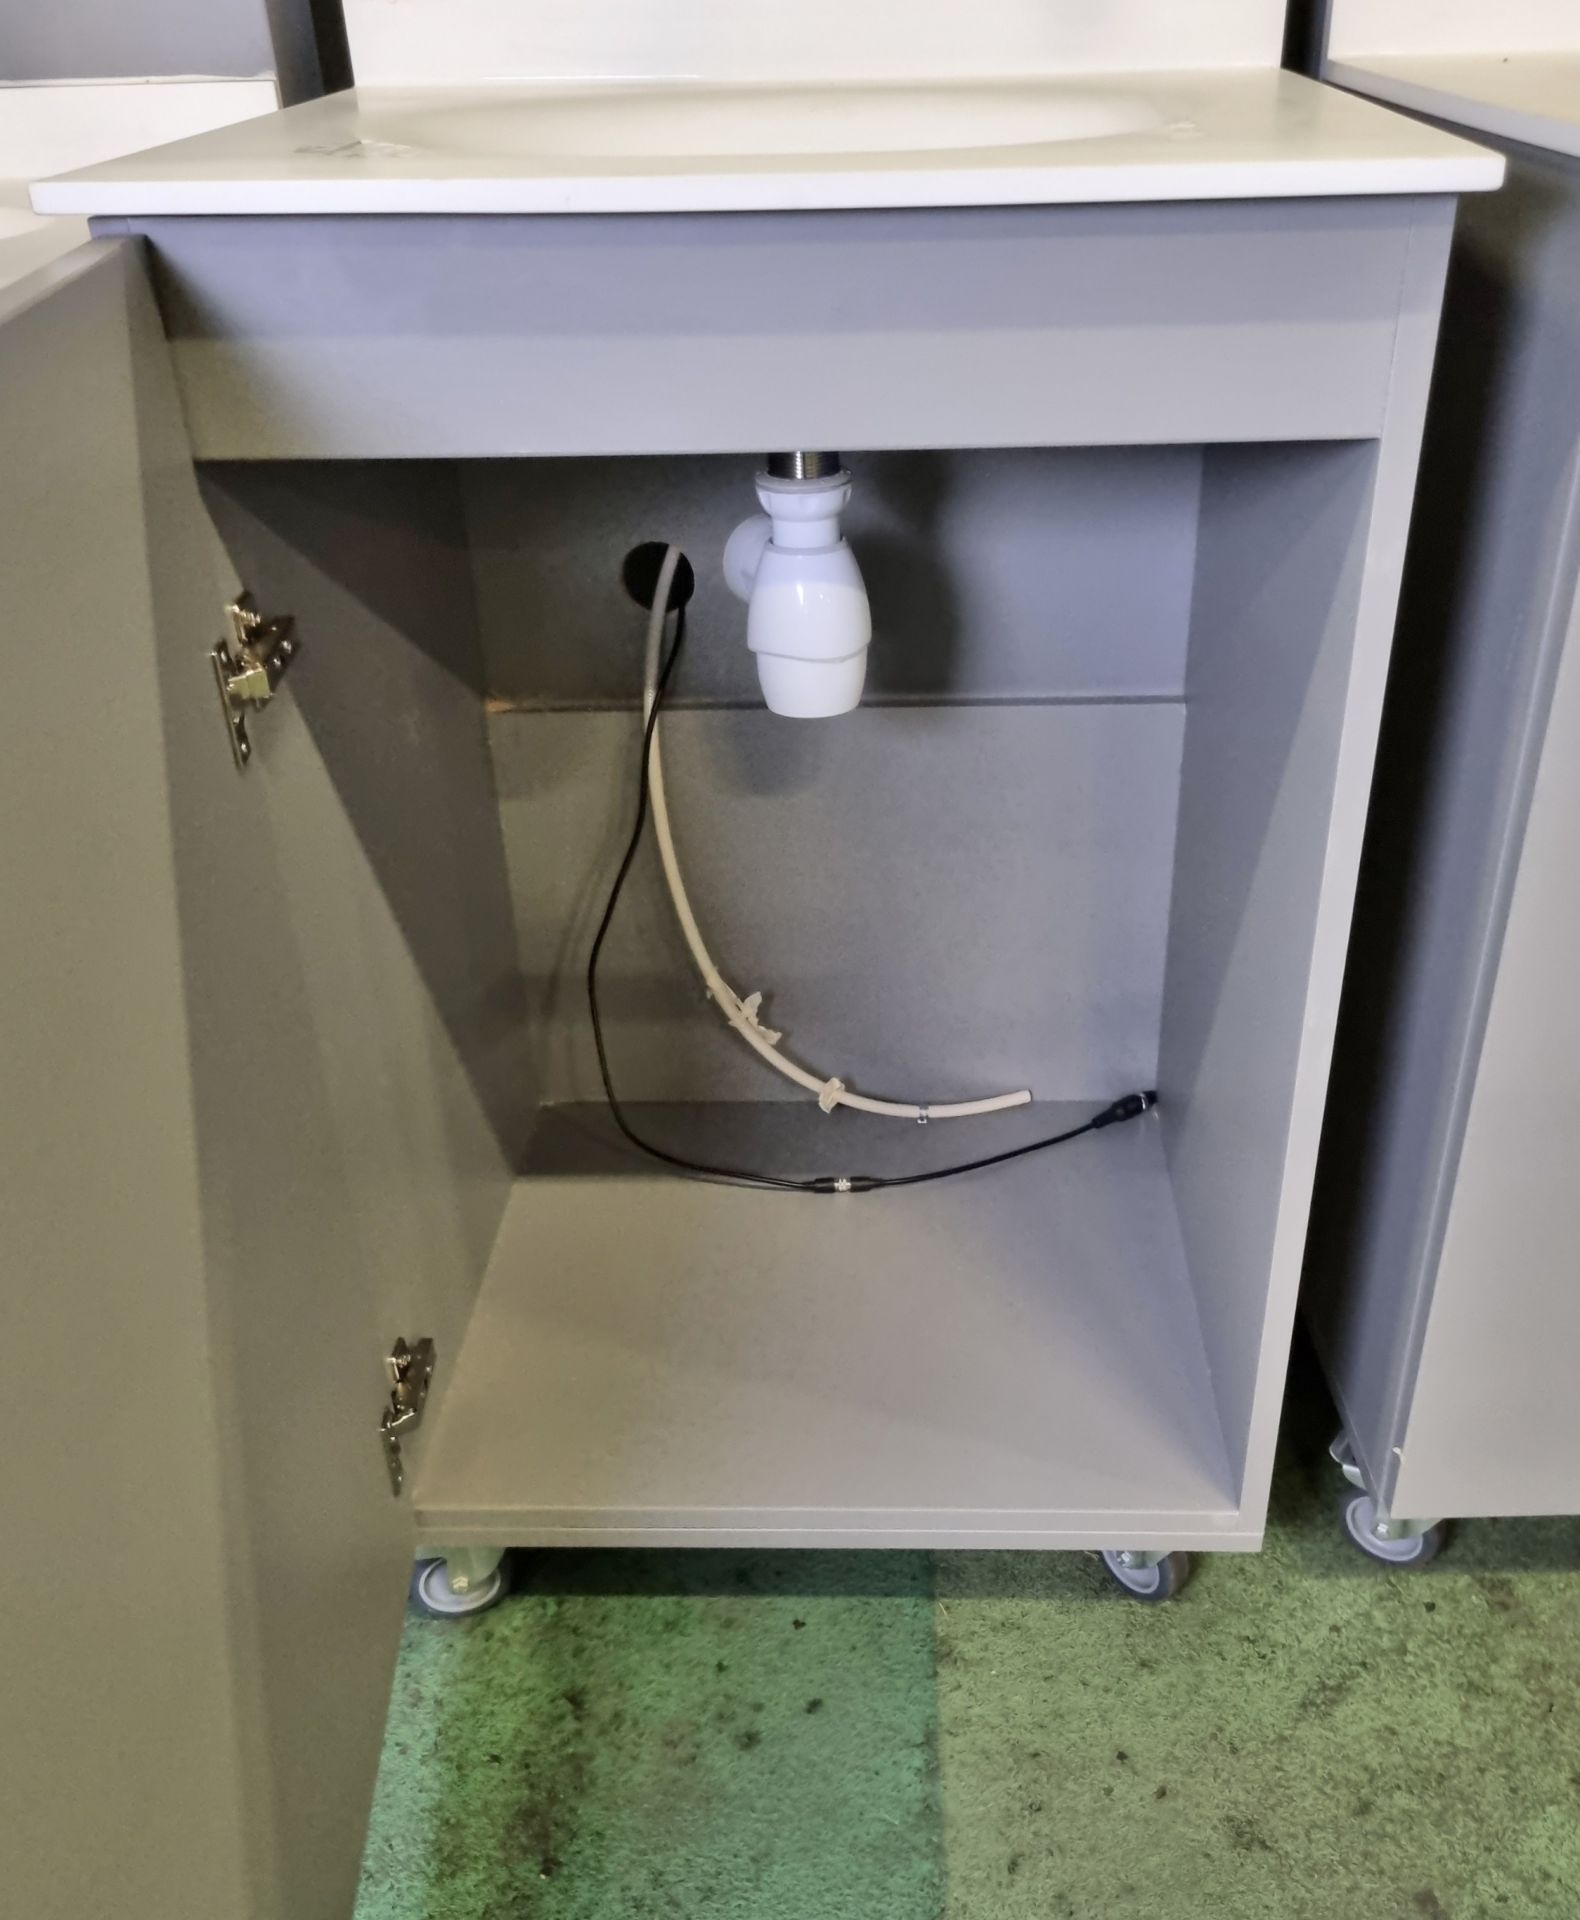 Portable hand wash station with under counter storage & Armitage Shanks mixer tap - Bild 4 aus 4